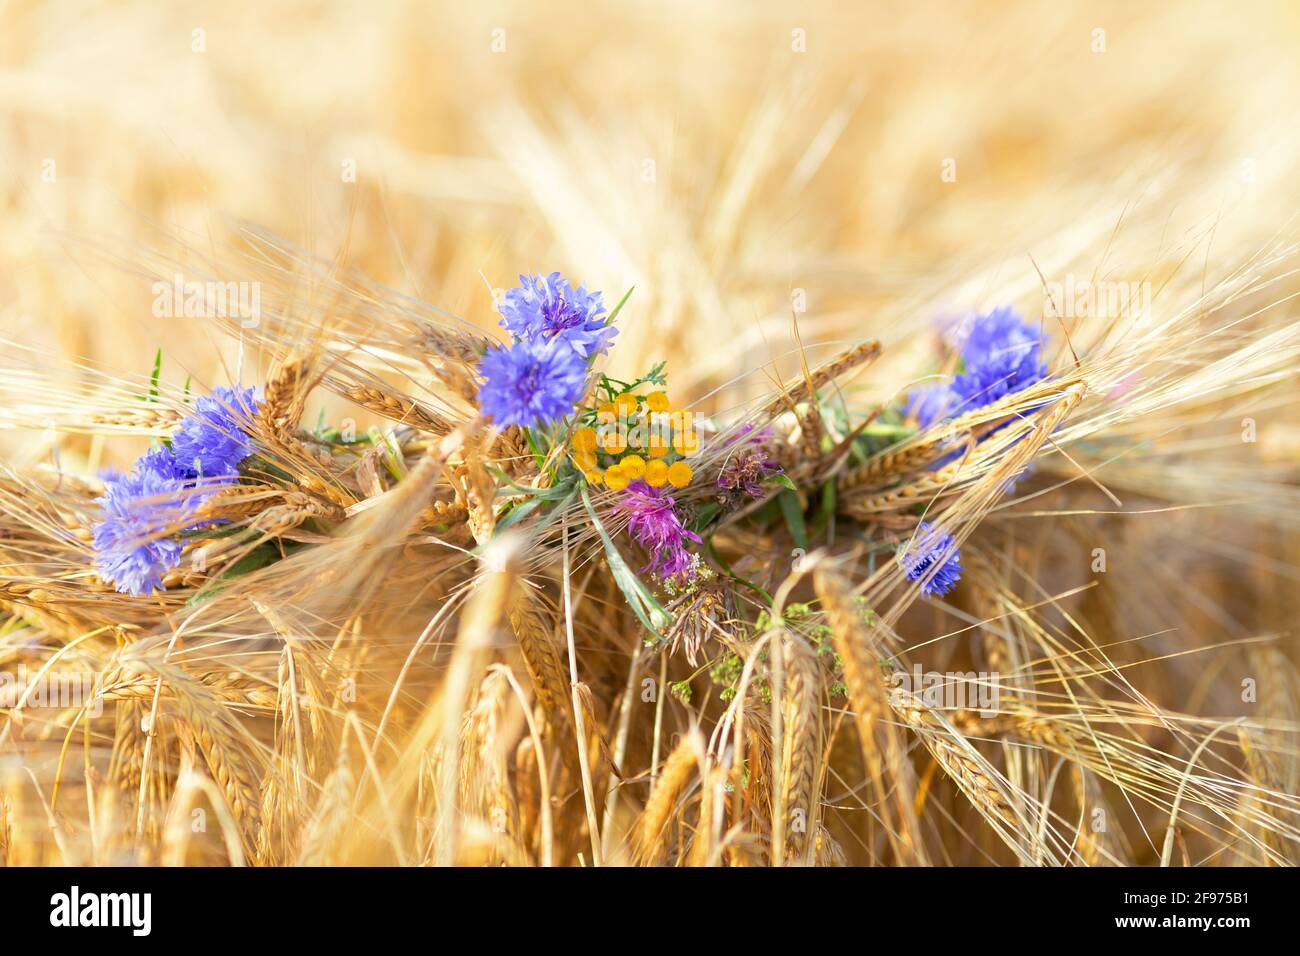 Flores silvestres-cornflowers azul, amarillo y púrpura se tejen en una corona de orejas de centeno. Luz solar natural, primeros planos, enfoque selectivo Foto de stock